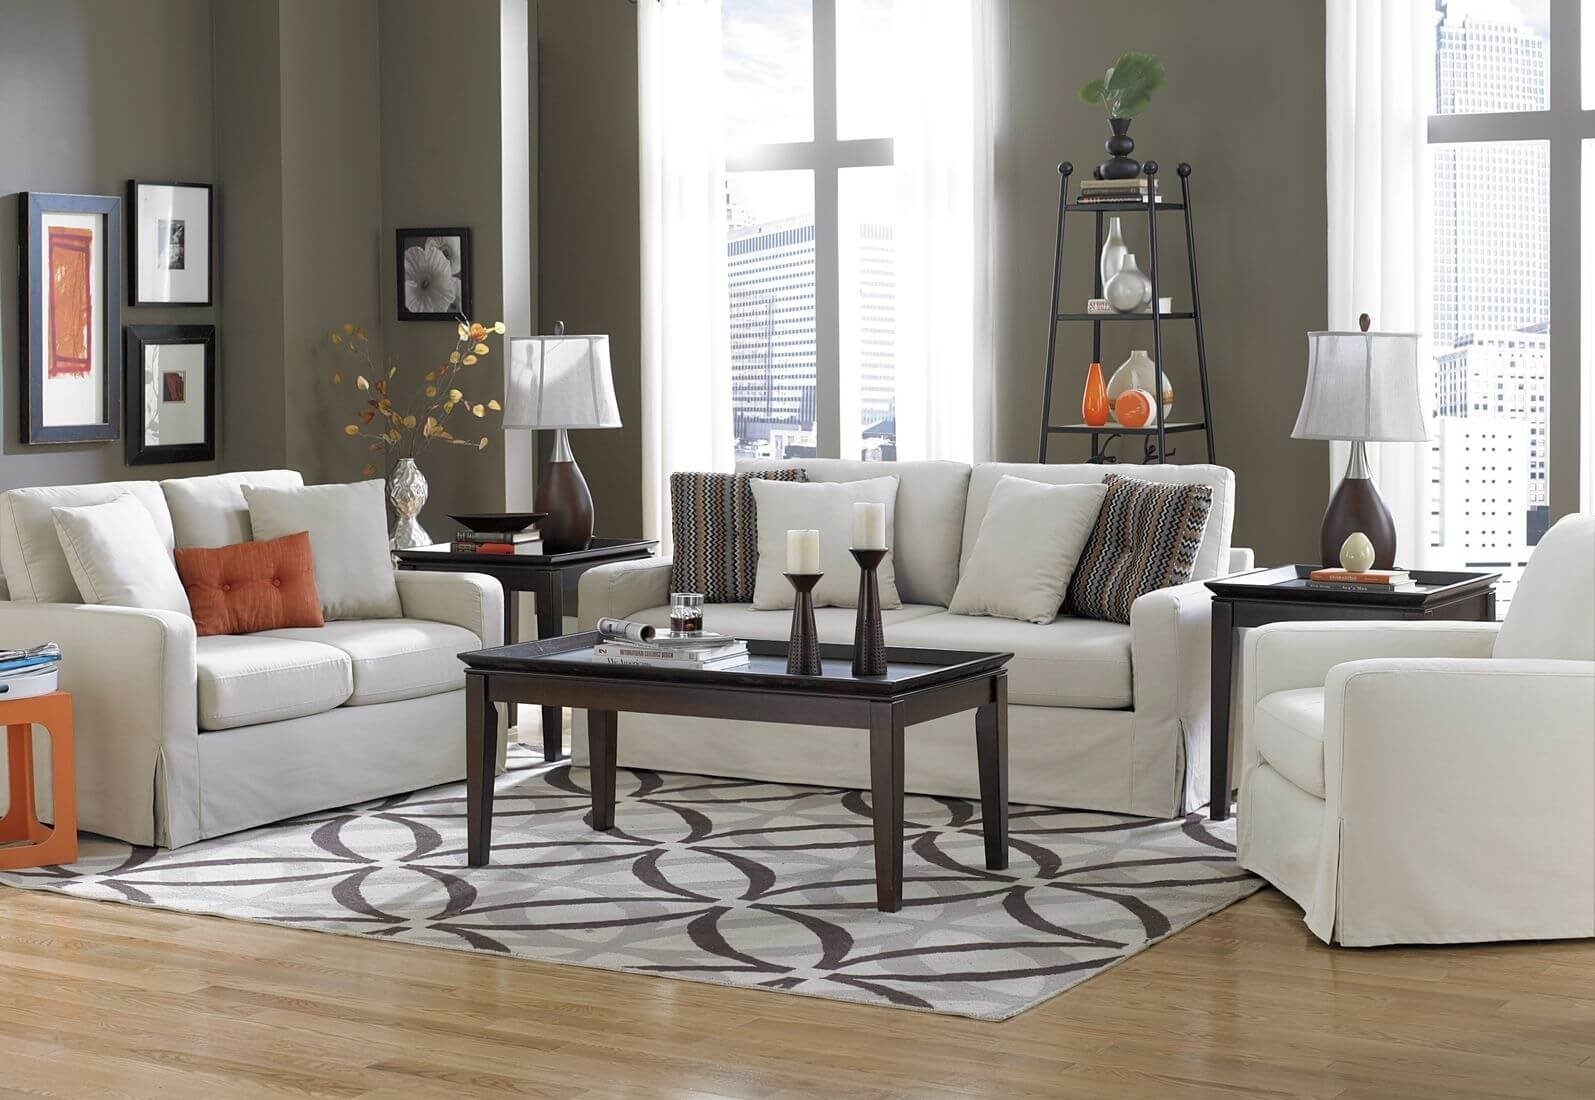 10 Lovable Living Room Area Rug Ideas dining room area rugs ideas modern dining room area rugs to create 2022